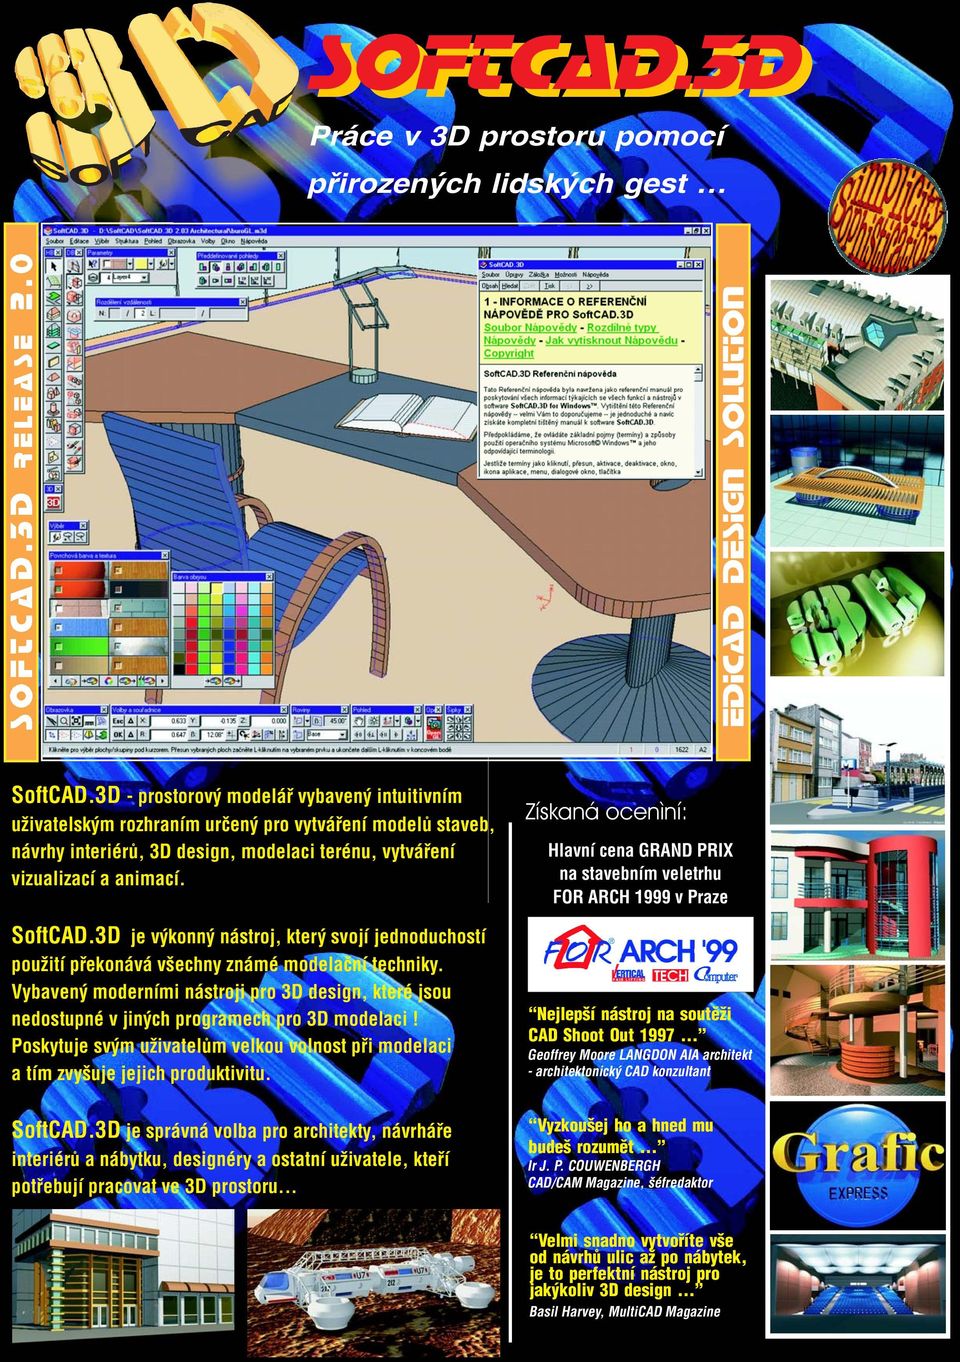 Získaná ocenìní: Hlavní cena GRAND PRIX na stavebním veletrhu FOR ARCH 1999 v Praze SoftCAD.3D je výkonný nástroj, který svojí jednoduchostí pou ití pøekonává všechny známé modelaèní techniky.